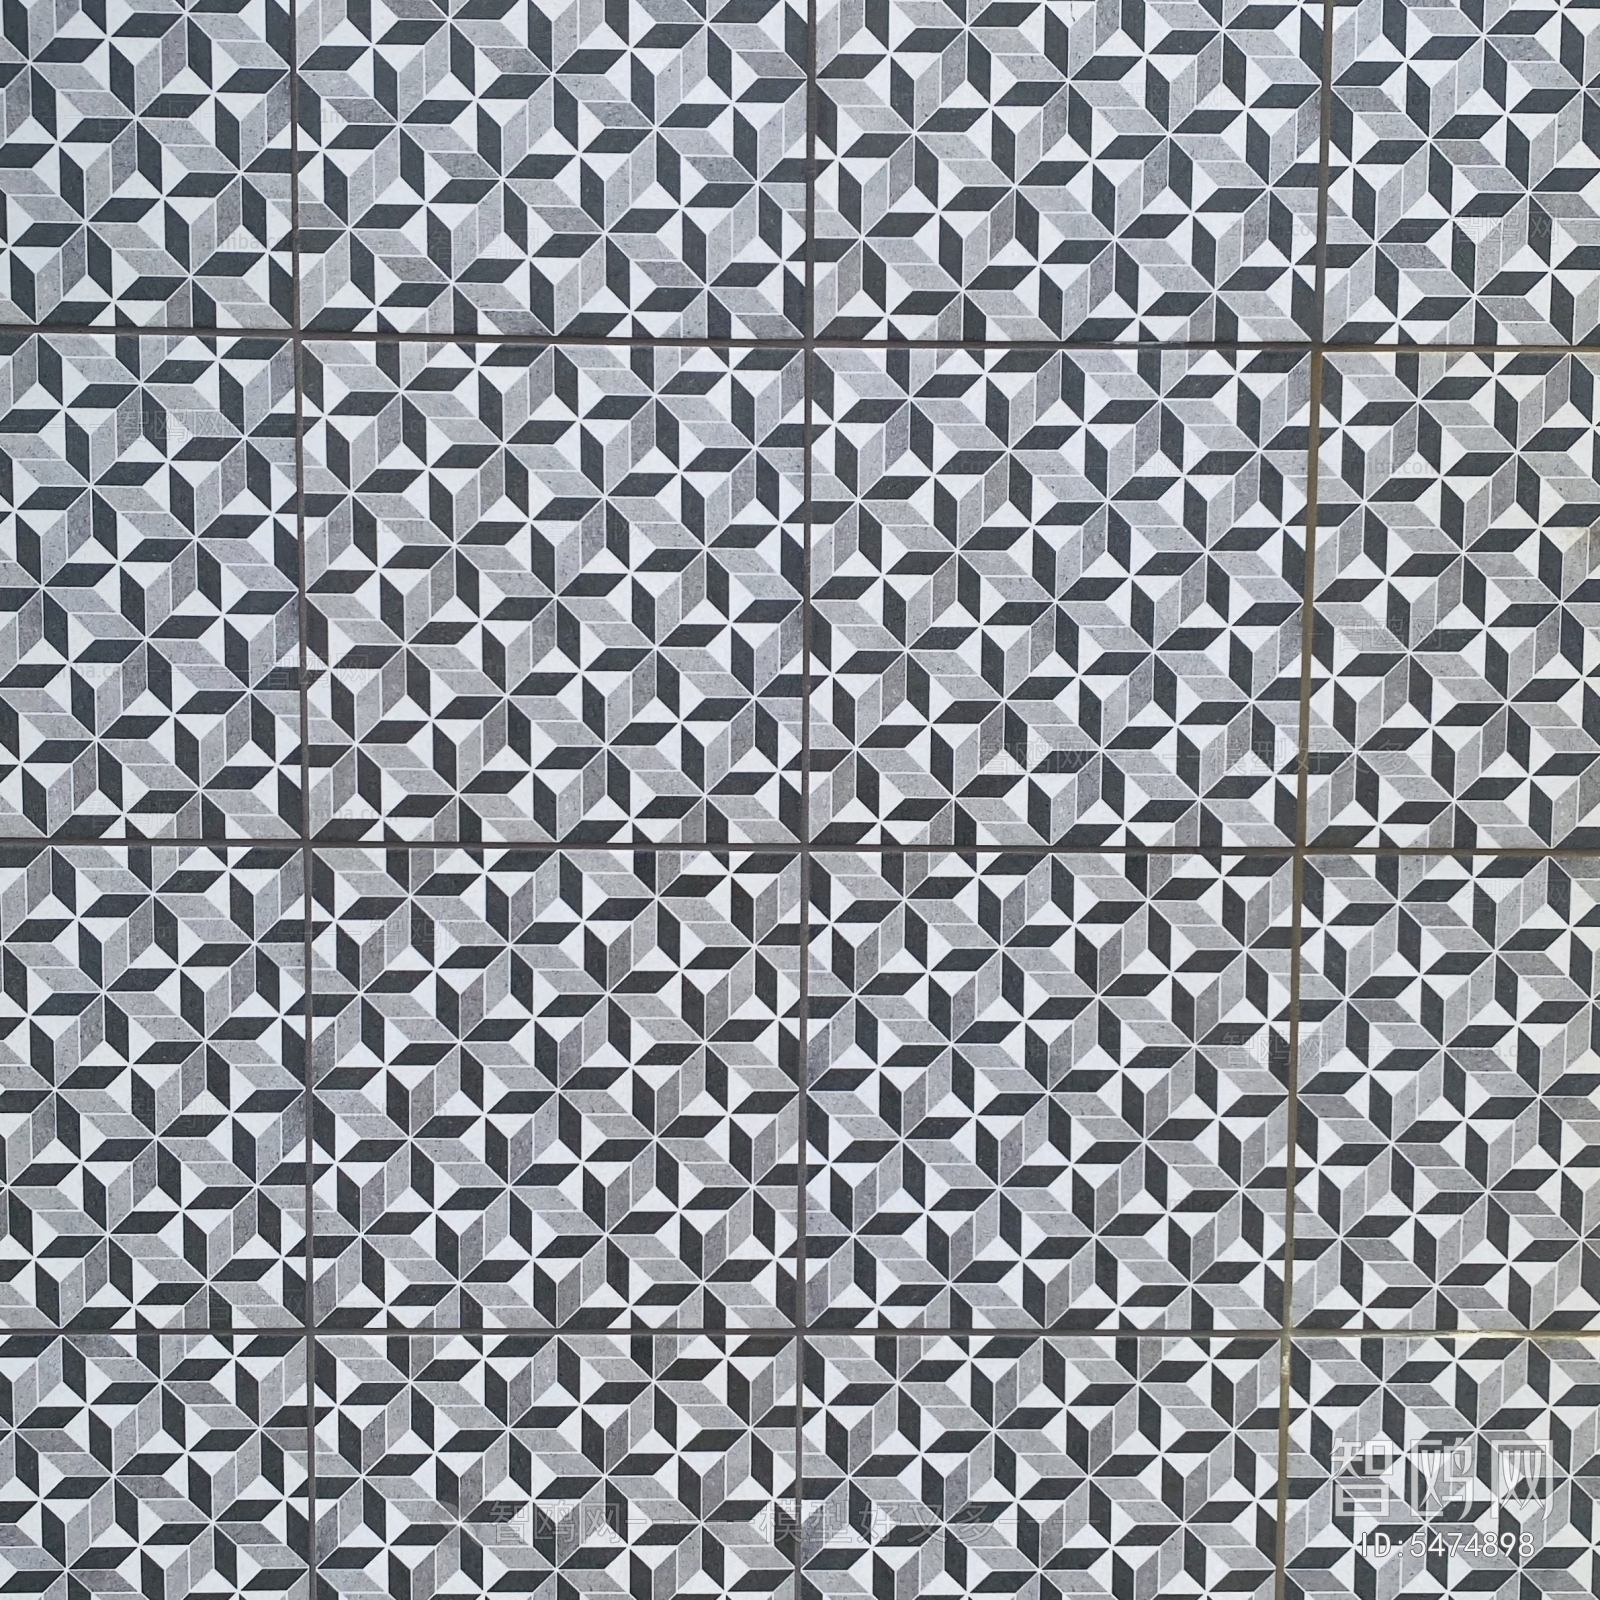 Perforated Metal